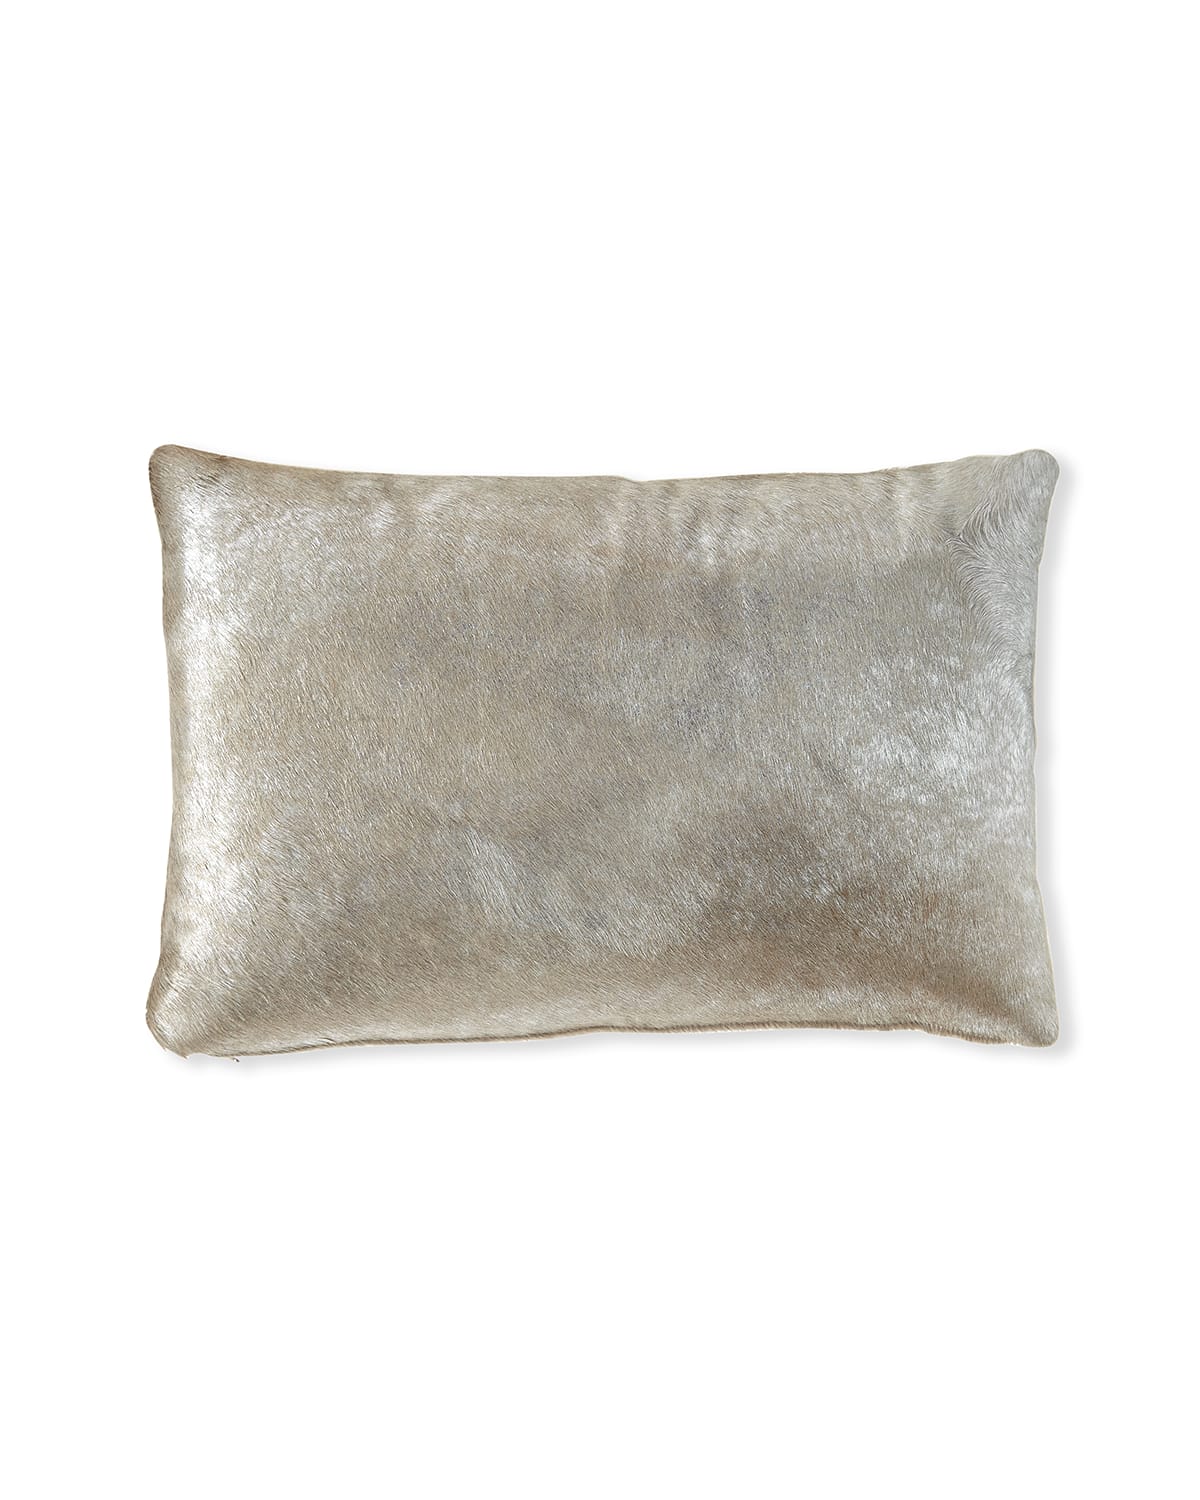 Massoud Hair Hide Pillow, 23" X 15"